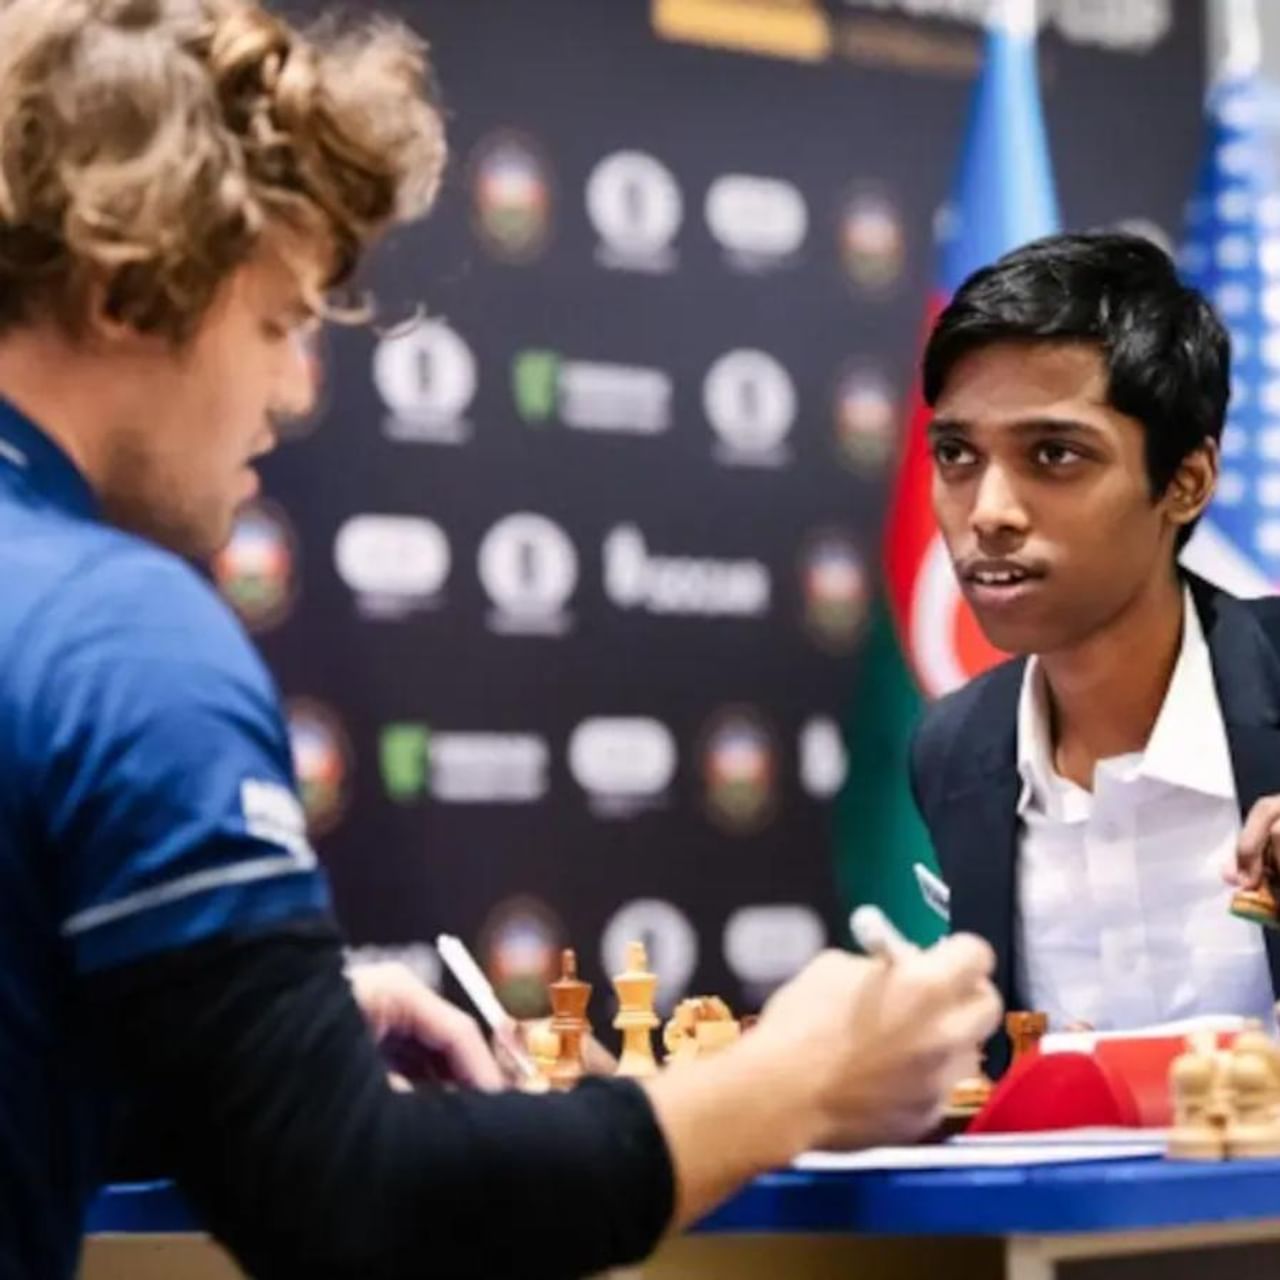 FIDE ವರ್ಲ್ಡ್ ಕಪ್ 2023 ಅನ್ನು ಗೆಲ್ಲುವಲ್ಲಿ ಭಾರತದ ಆರ್ ಪ್ರಜ್ಞಾನಂದ ವಿಫಲರಾಗಿದ್ದಾರೆ. ಅಝರ್​ಬೈಜಾನ್​ನ ಬಾಕುವಿನಲ್ಲಿ ನಡೆದ ಚೆಸ್ ವಿಶ್ವಕಪ್ ಫೈನಲ್‌ನಲ್ಲಿ ವಿಶ್ವ ನಂಬರ್ 1 ಮ್ಯಾಗ್ನಸ್ ಕಾರ್ಲ್‌ಸೆನ್ ಅವರು ಭಾರತೀಯ ಗ್ರ್ಯಾಂಡ್‌ಮಾಸ್ಟರ್‌ನ ಮೇಲೆ ಟೈಬ್ರೇಕ್​ನಲ್ಲಿ ಮೇಲುಗೈ ಸಾಧಿಸಿ ಚಾಂಪಿಯನ್ ಆಗಿ ಹೊರಹೊಮ್ಮಿದರು.